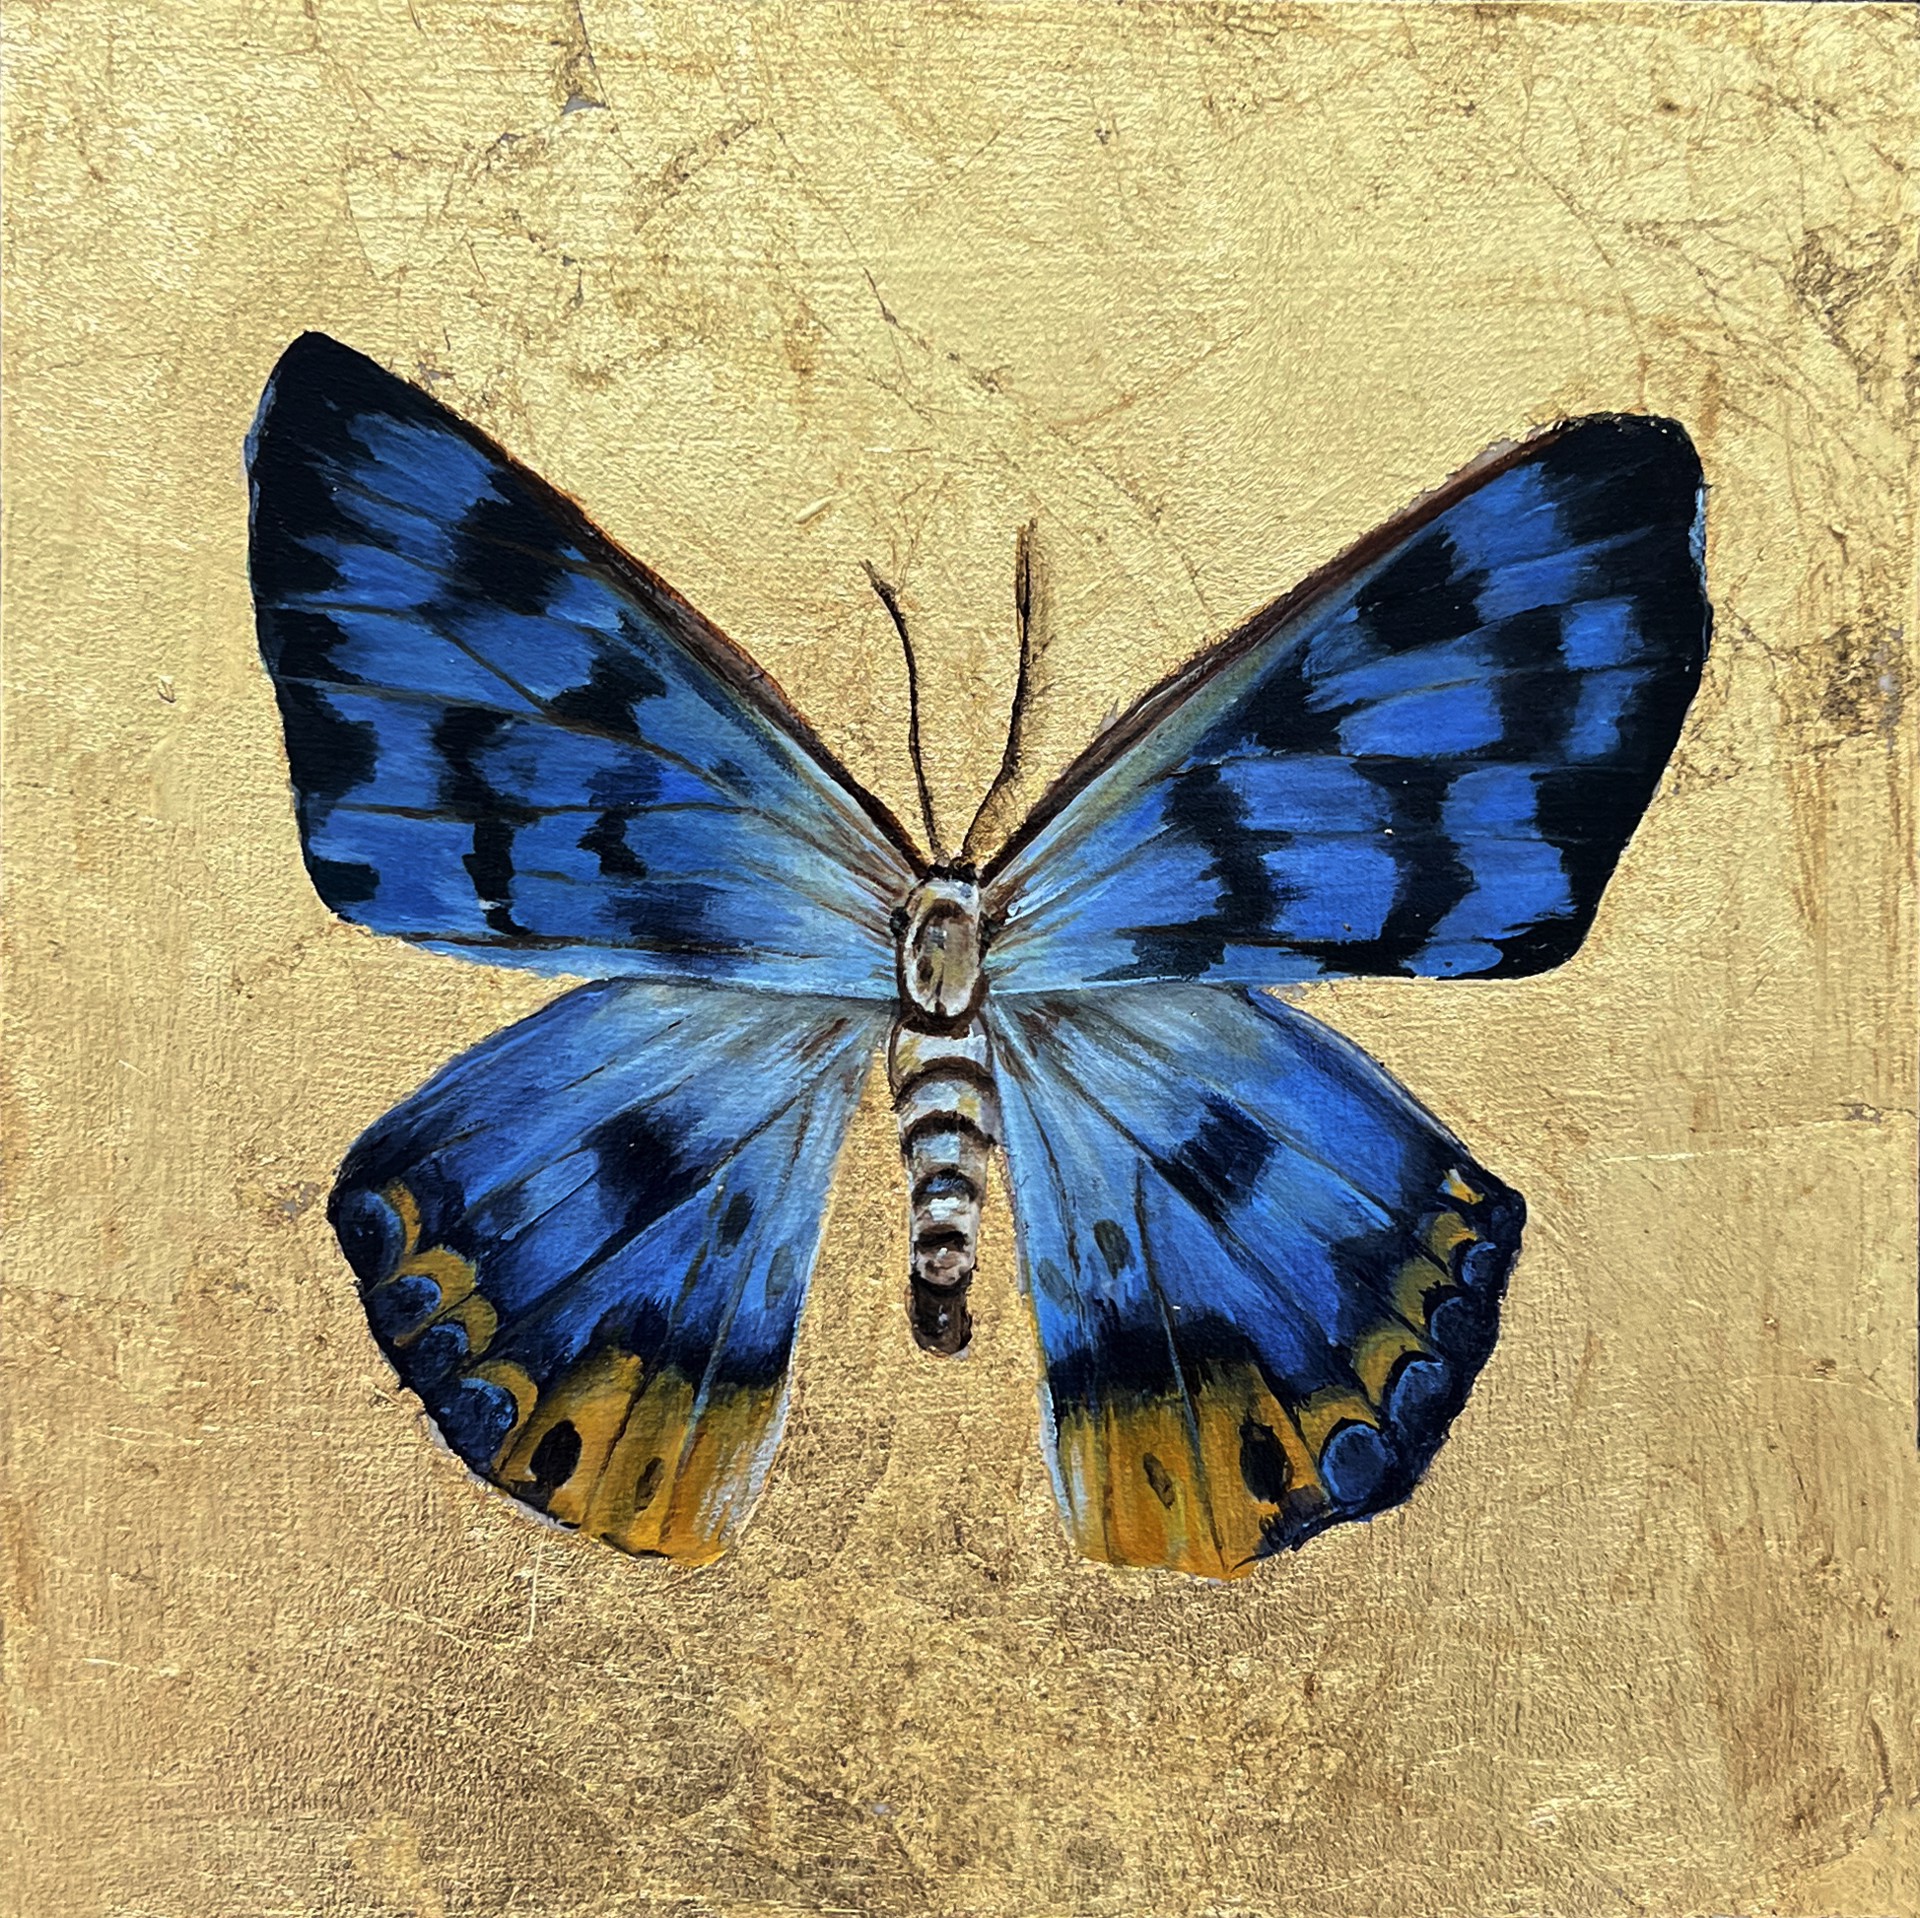 Butterfly by Megan Buccere